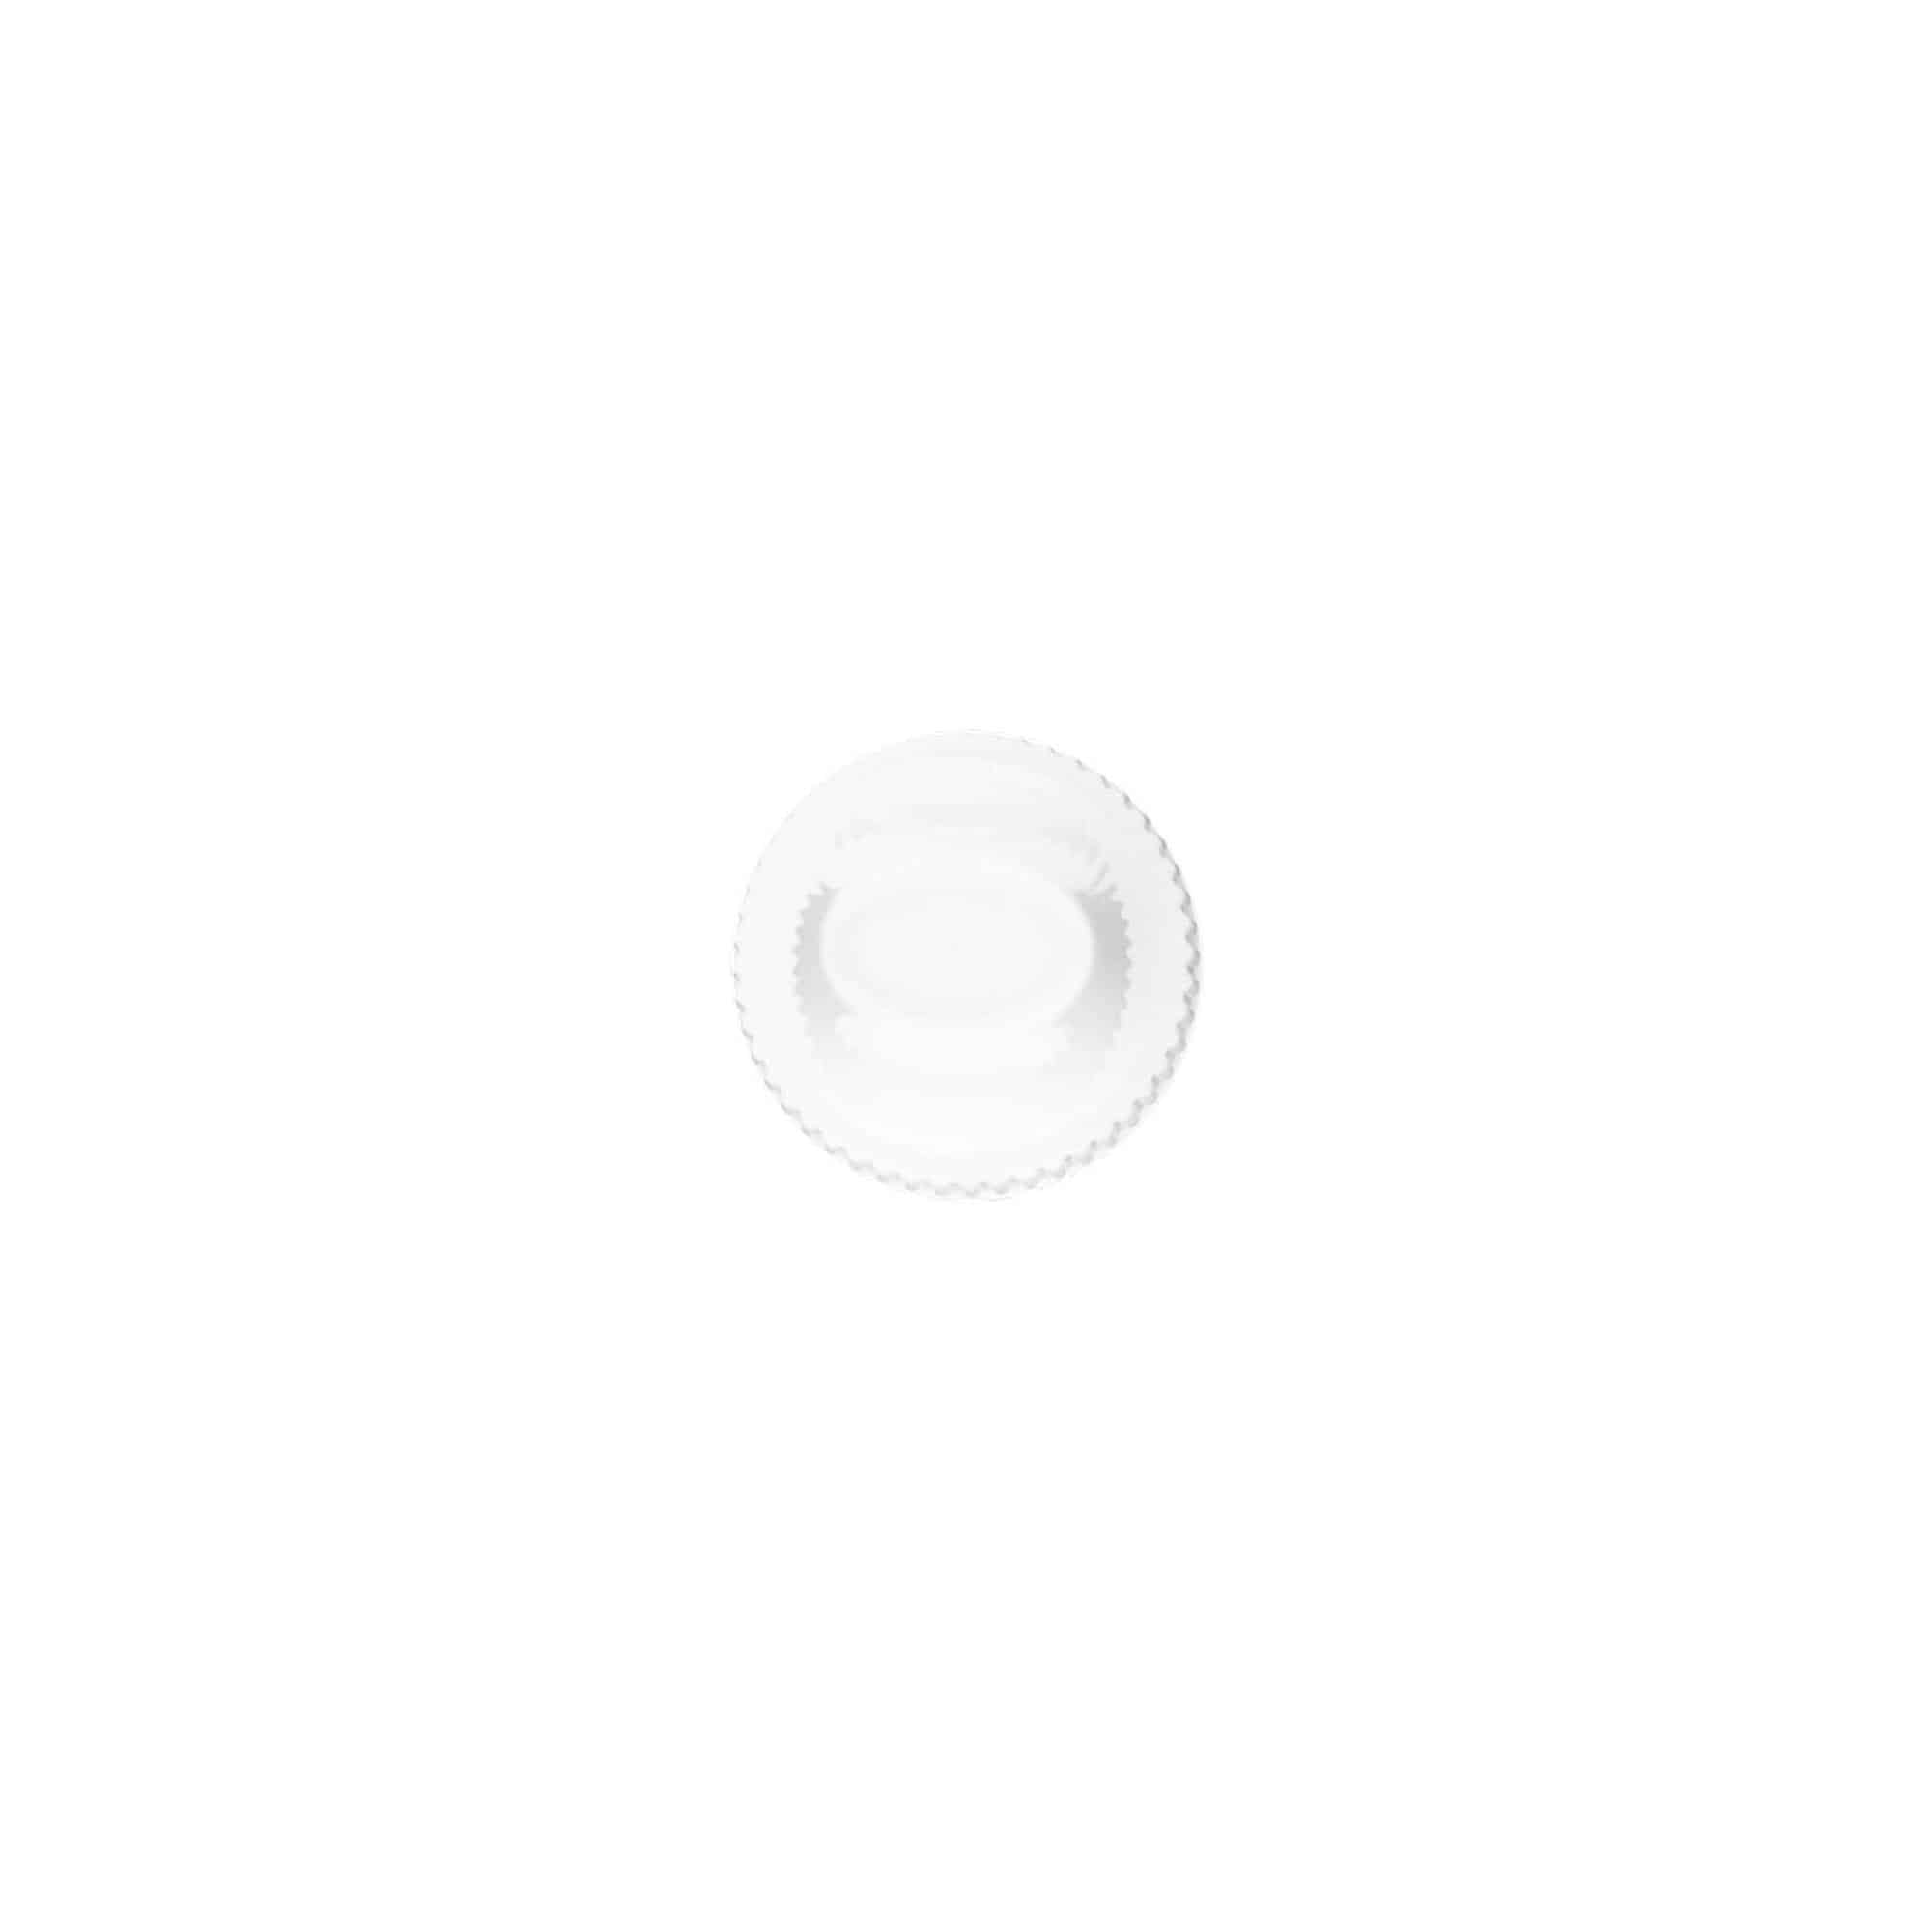 Šroubovací uzávěr s odtrhávacím kroužkem a dětskou pojistkou pro 'E-Liquid', plast PP, bílý